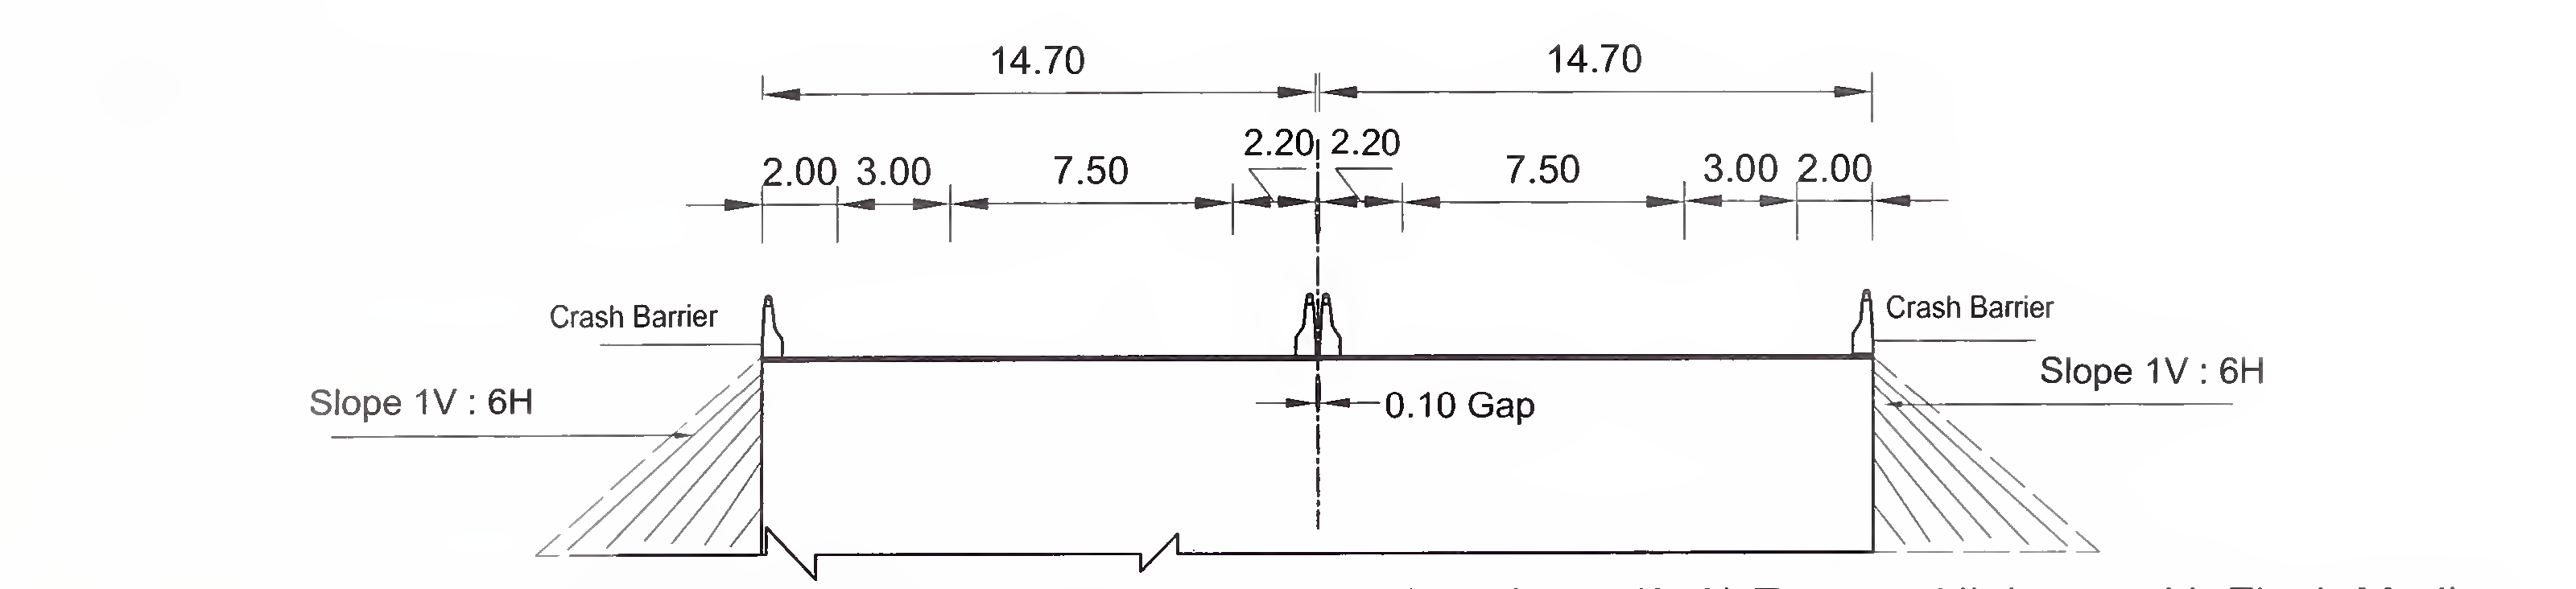 চিত্র 6.4 (ক) 4-লেনের জন্য স্ল্যাব এবং বক্স প্রকারের কালভার্টের সাধারণ ক্রস-বিভাগটি (2 × 2) ফ্লাশ মিডিয়েন সহ এক্সপ্রেস হাইওয়ে